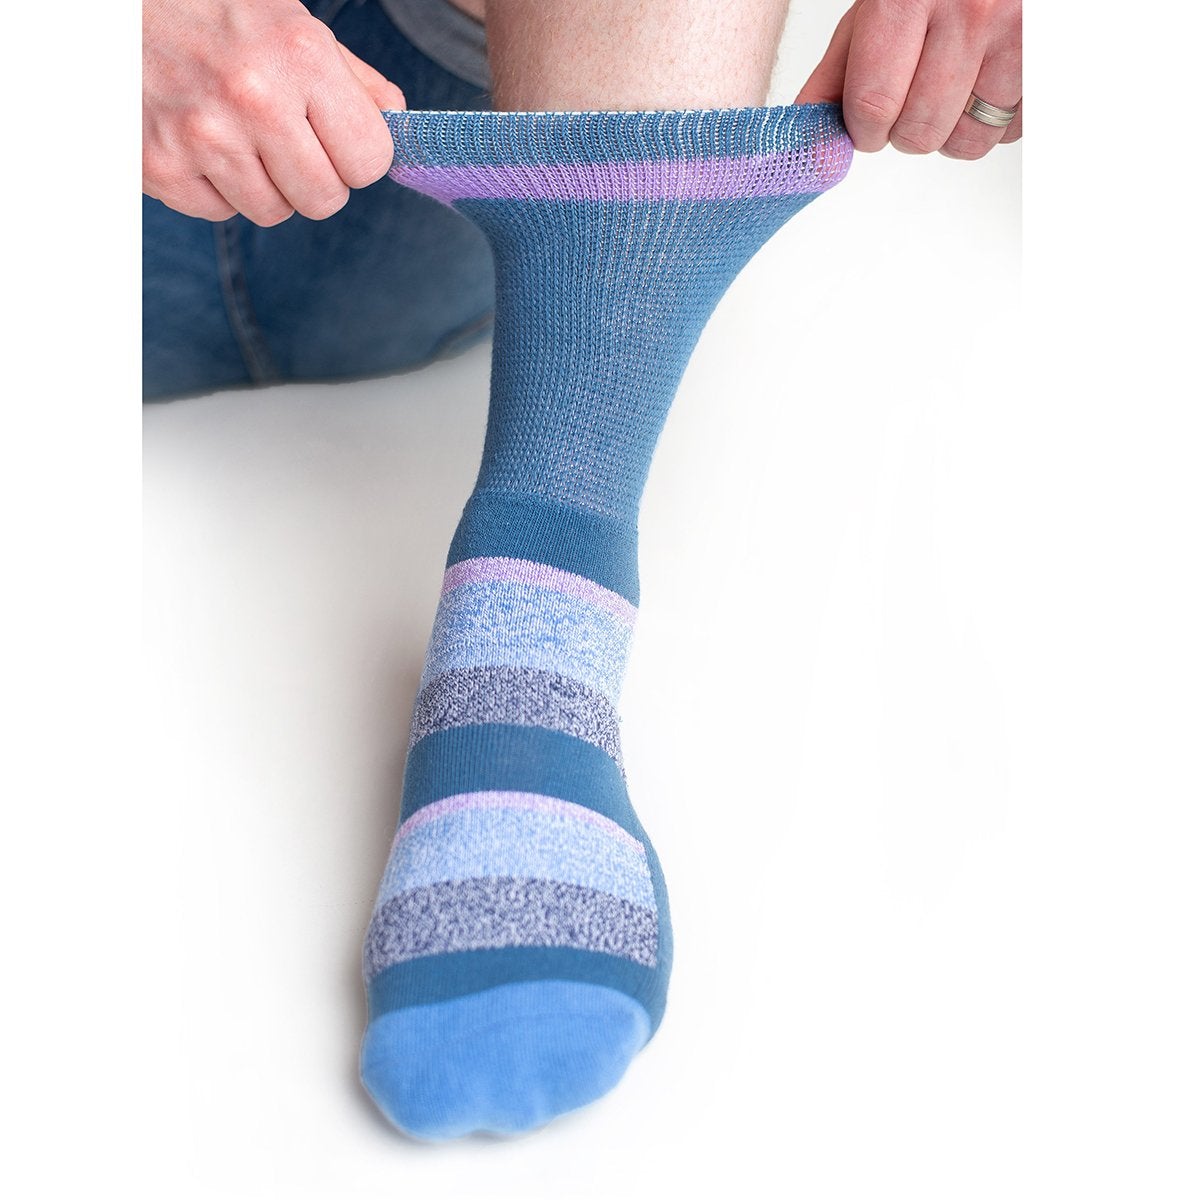 Diabetic Socks - Dusk Blue Stripes - Diabetic Socks Shops